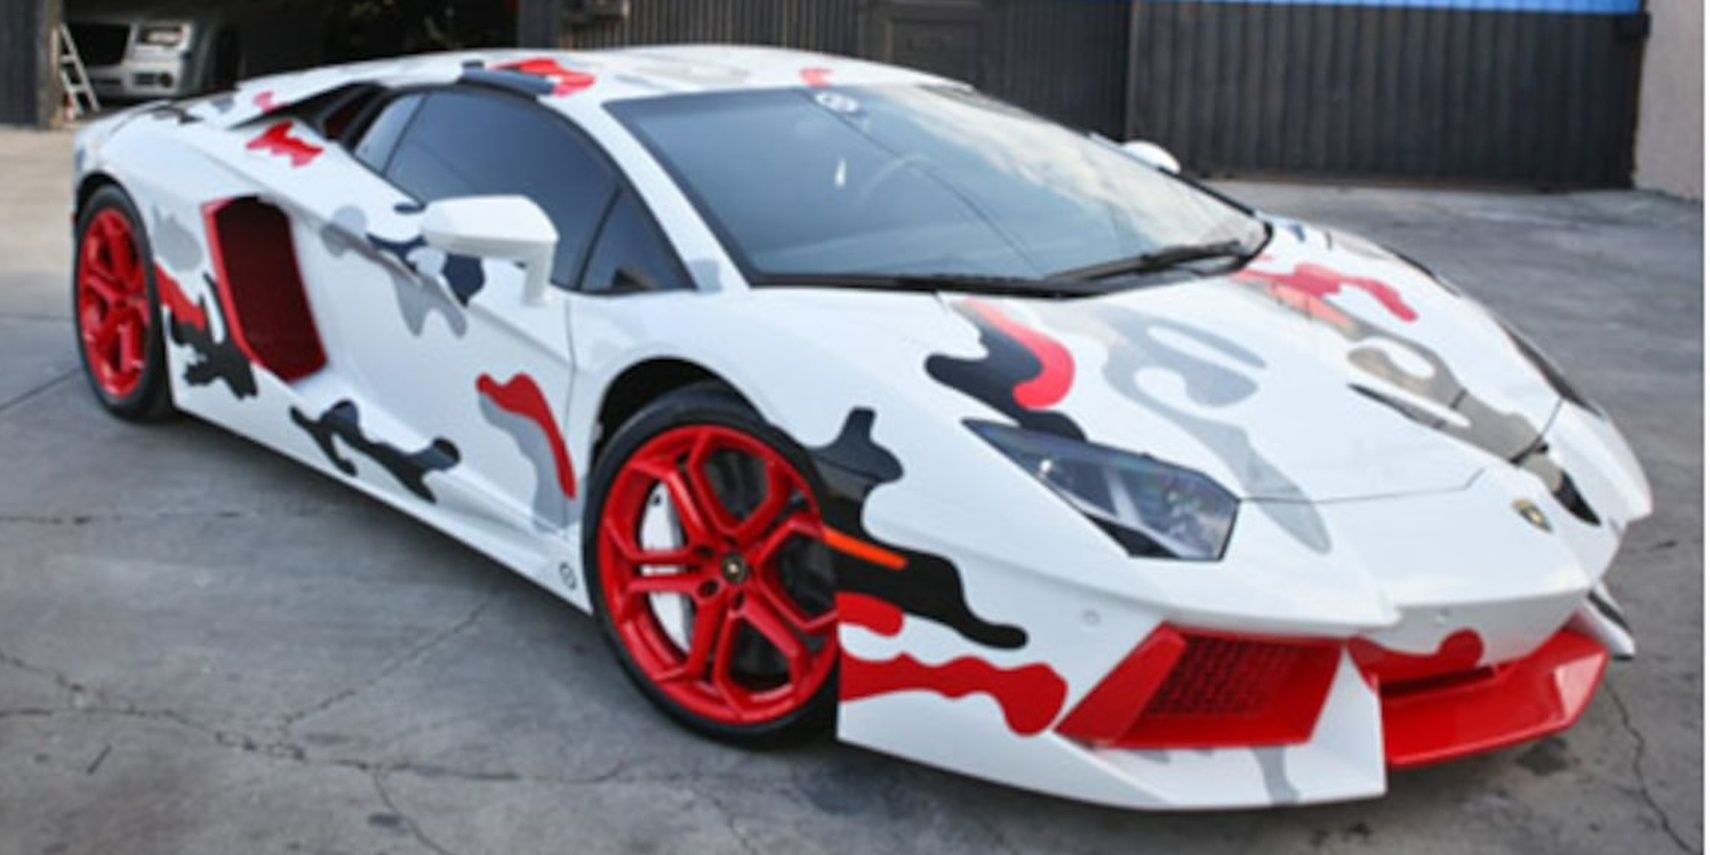 Chris Brown's modified Lamborghini Aventador White-Black-Red Camouflage